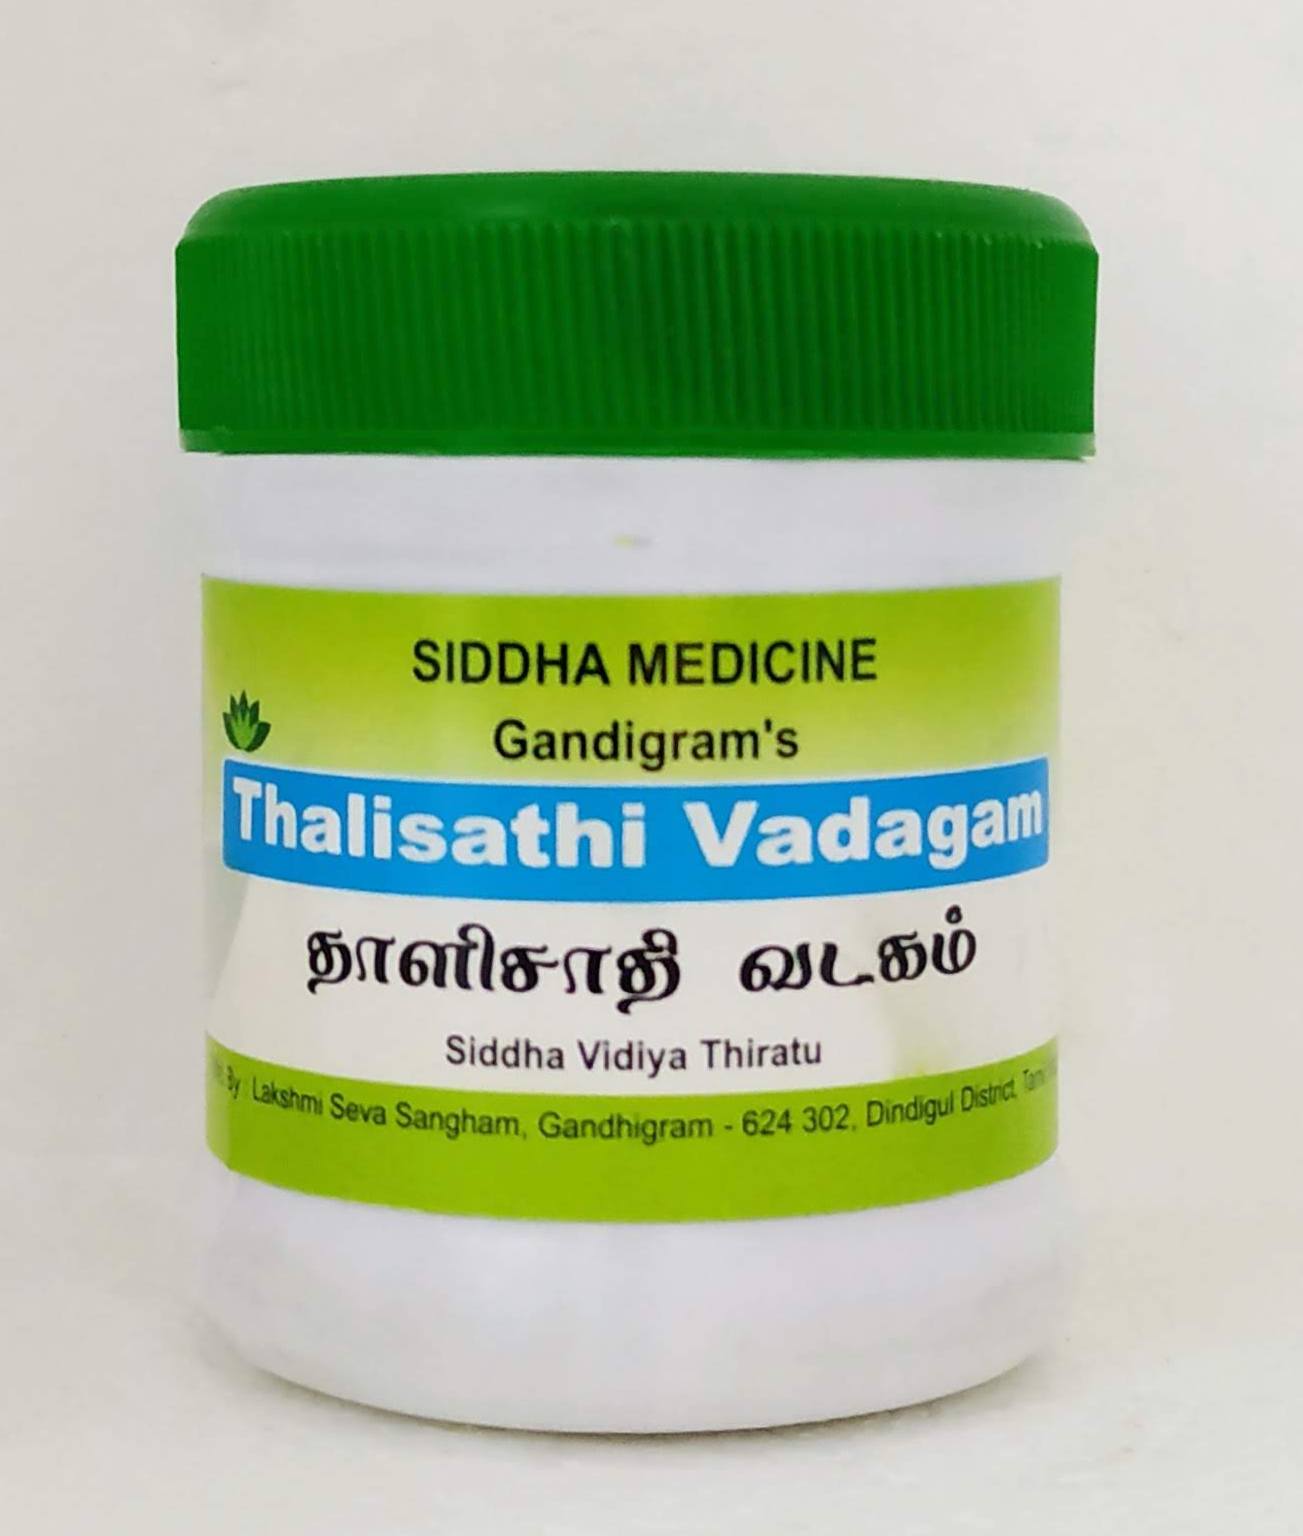 Shop Thaleesadi Vatagam Tablets - 50gm at price 53.00 from Lakshmi Seva Sangham Online - Ayush Care